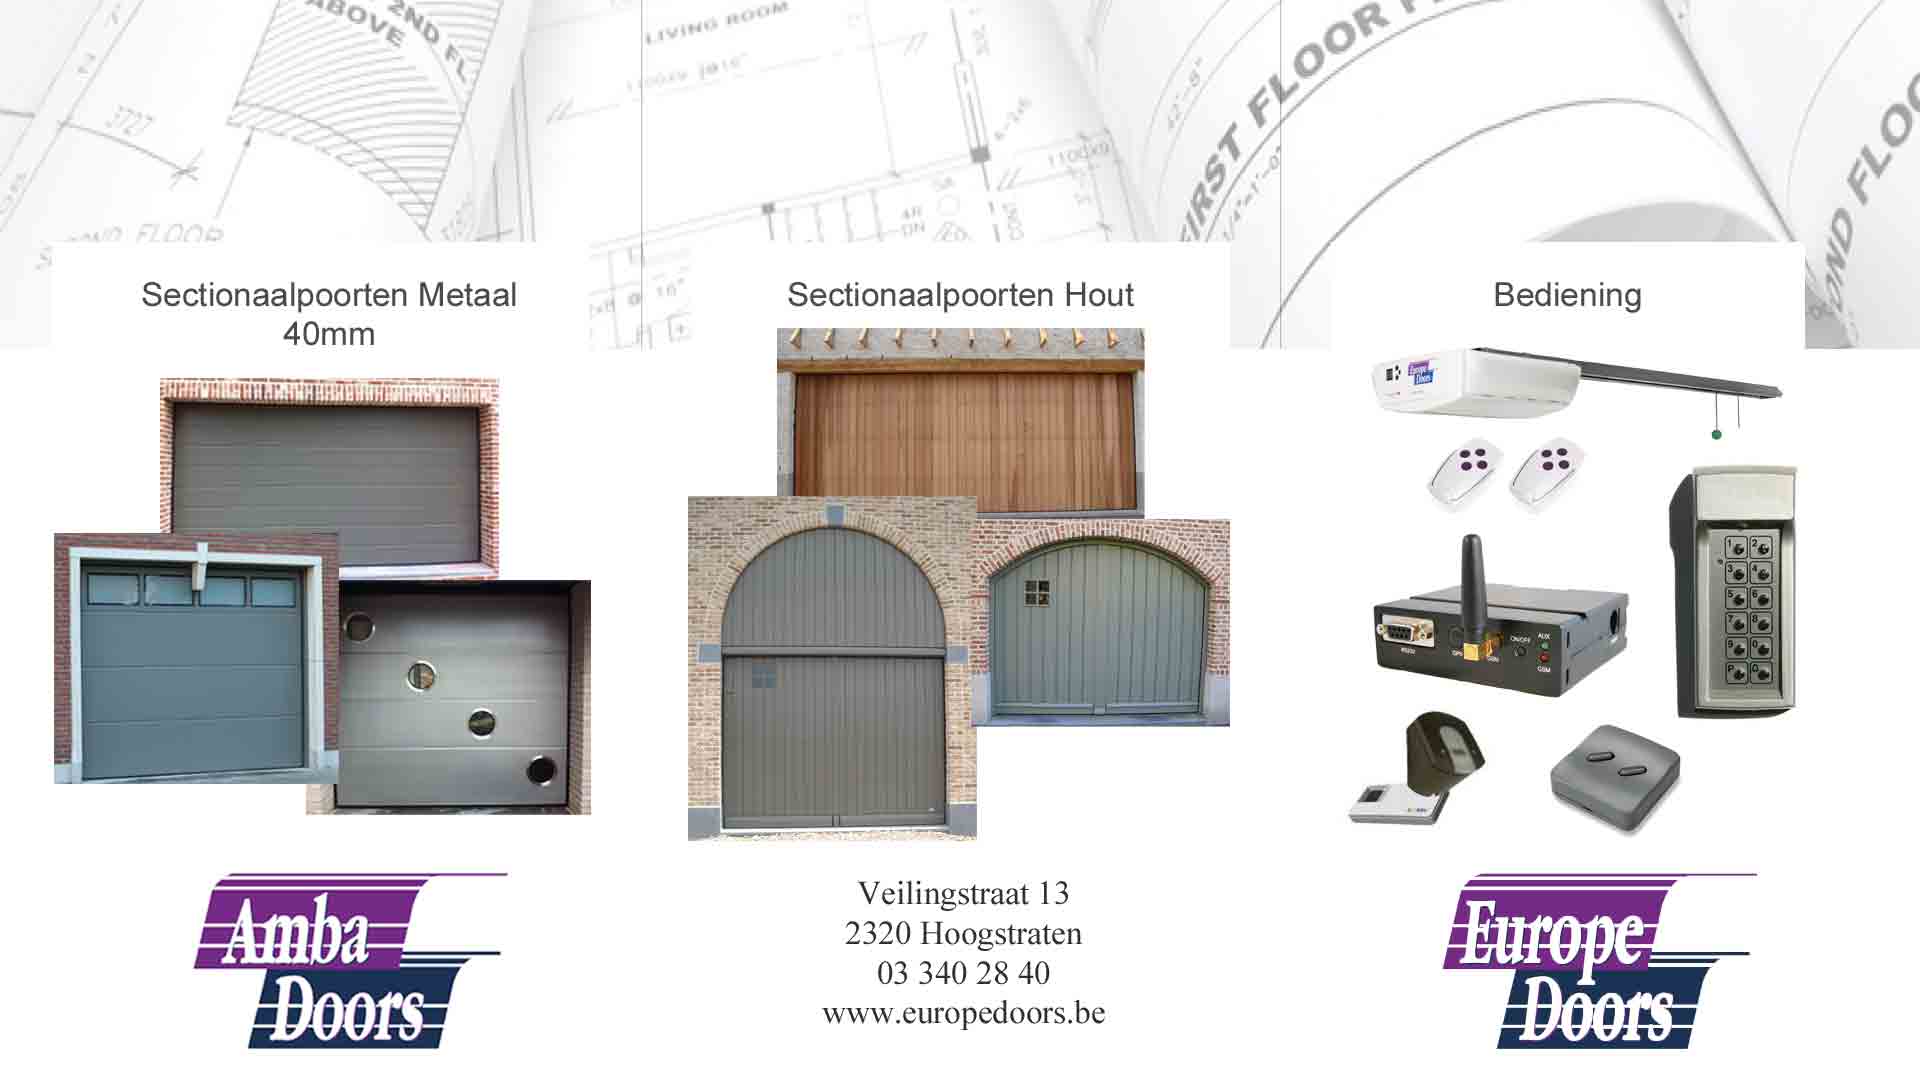 garagepoortinstallateurs Kapellen (Antw.) Europe Doors NV - Amba Doors NV